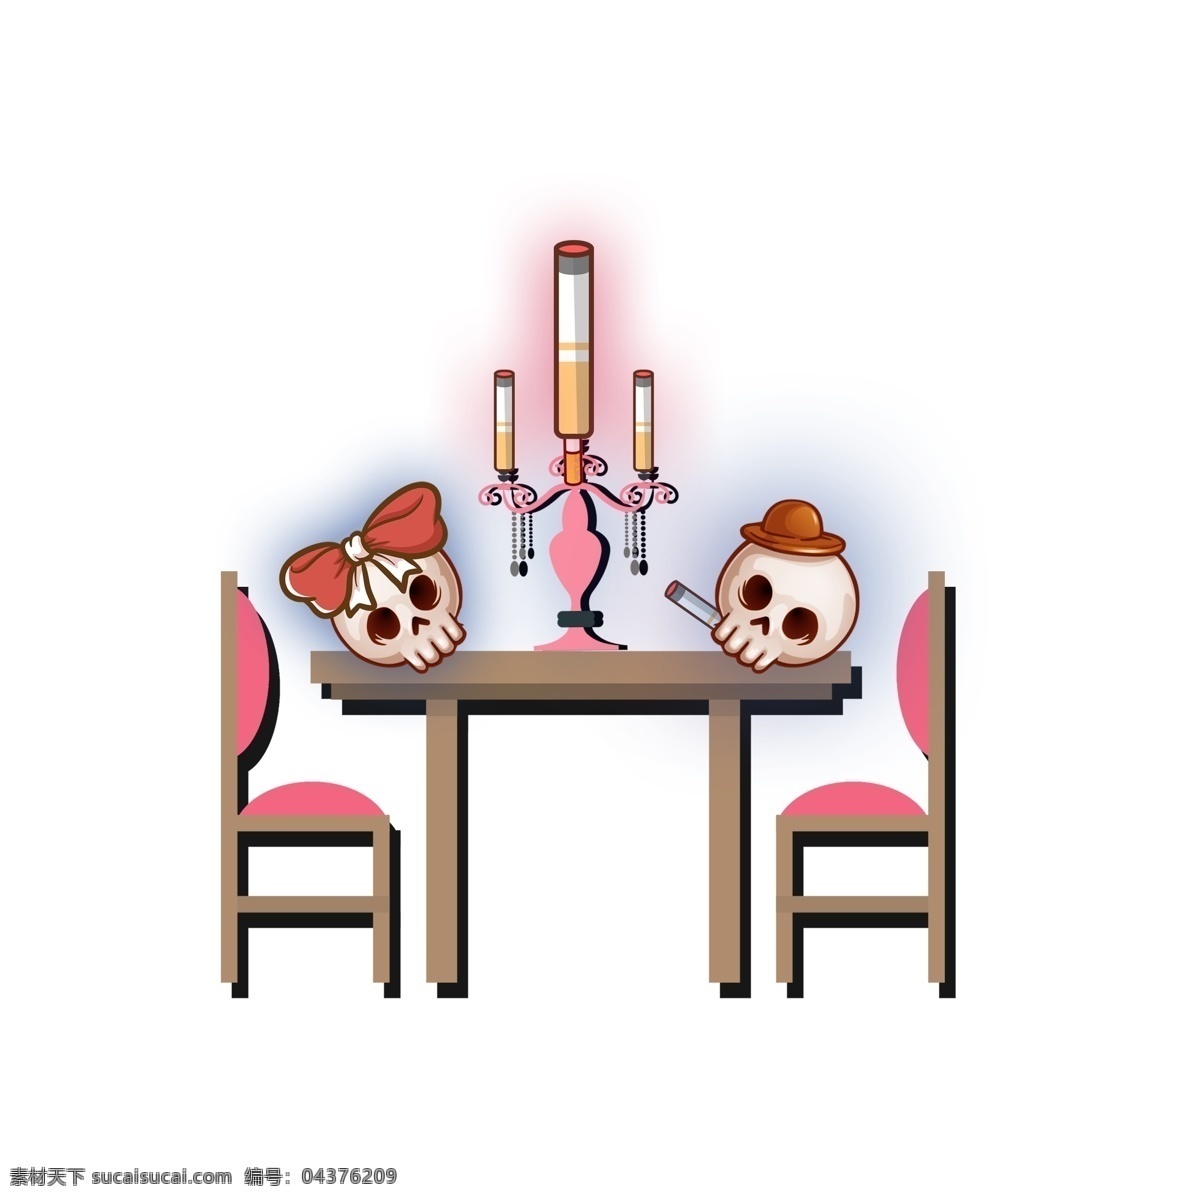 卡通 创意 禁烟 最后的晚餐 元素 插画 骨头 蜡烛 椅子 桌子